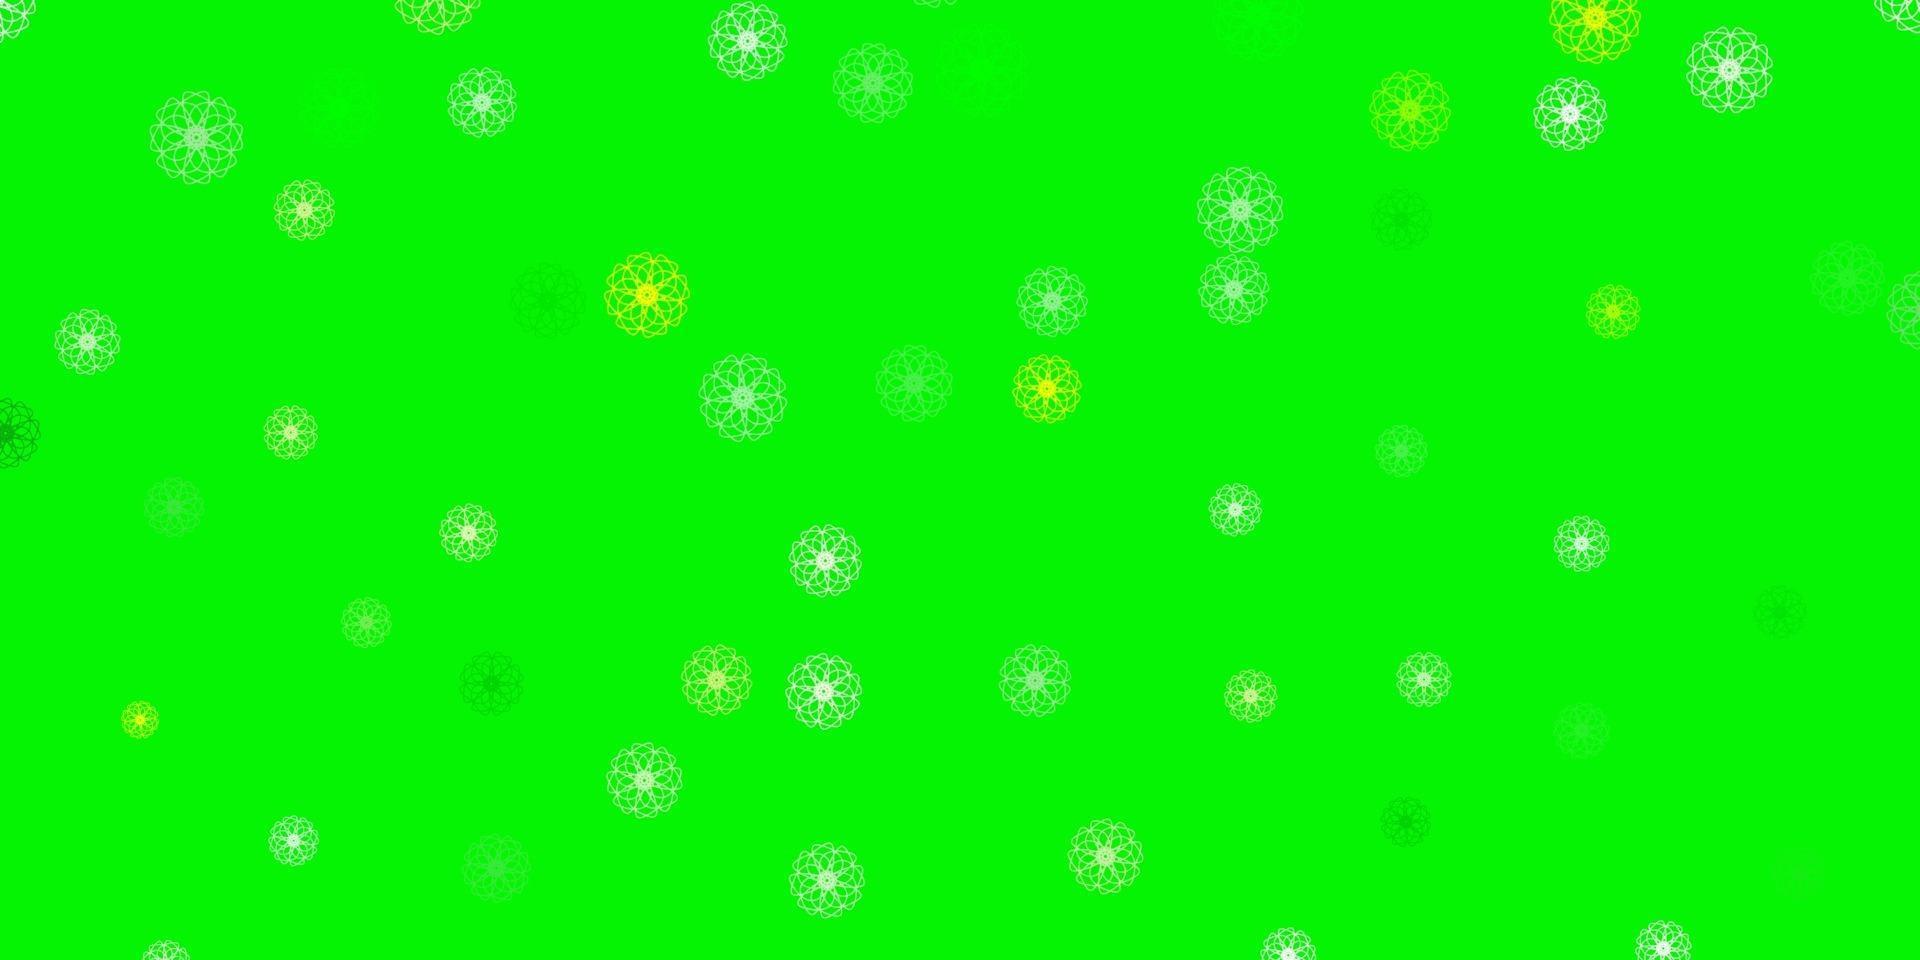 modello doodle vettoriale verde chiaro, giallo con fiori.